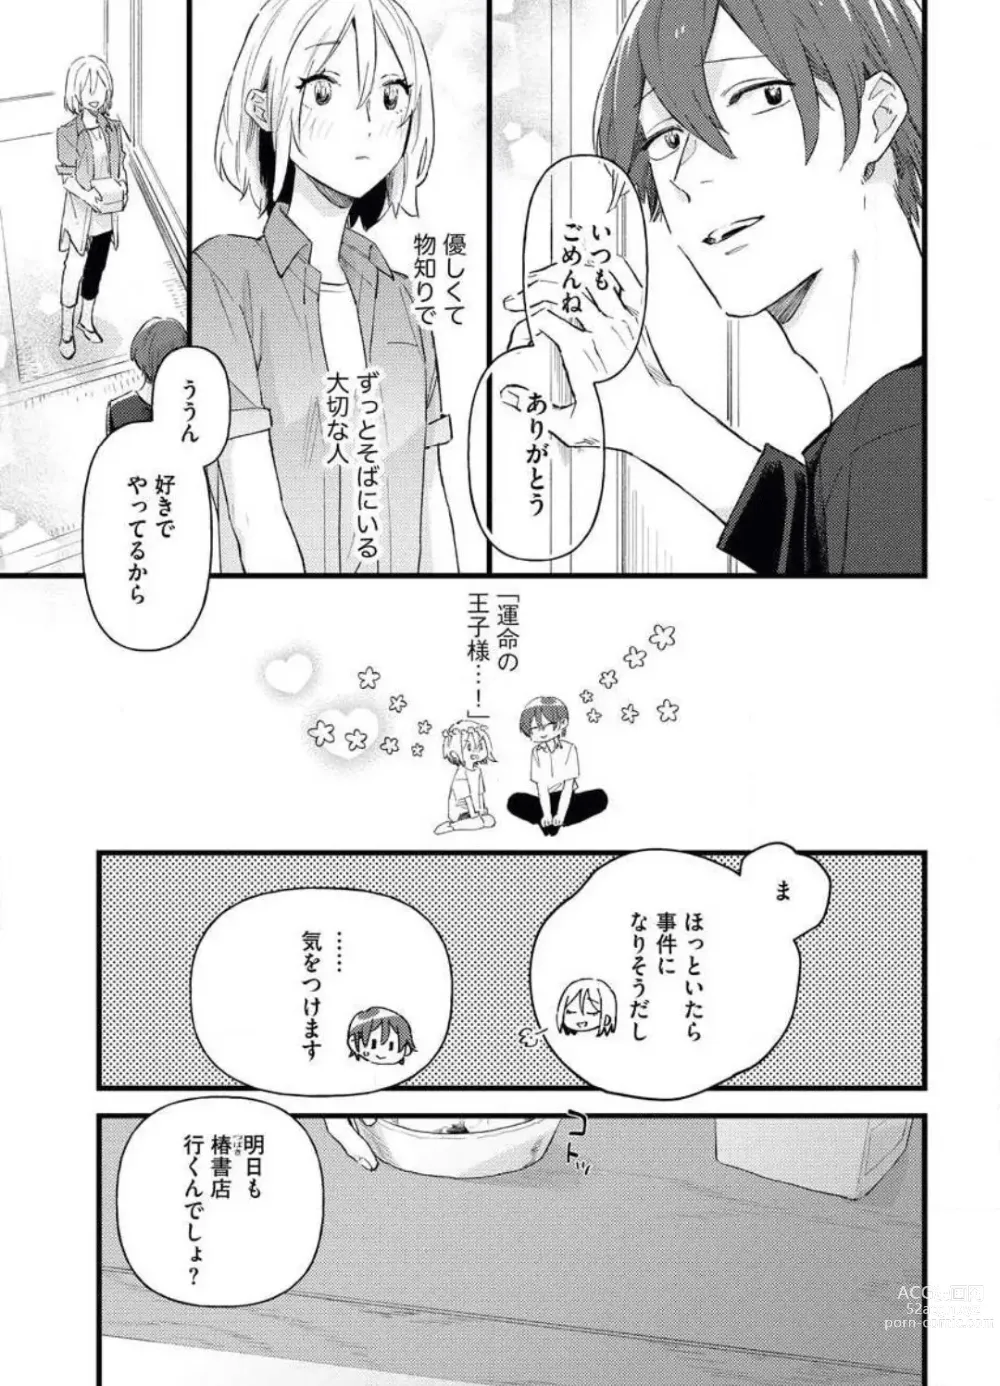 Page 7 of manga Gyokusai Kakugo de Dekiai Sengen~Chp.1